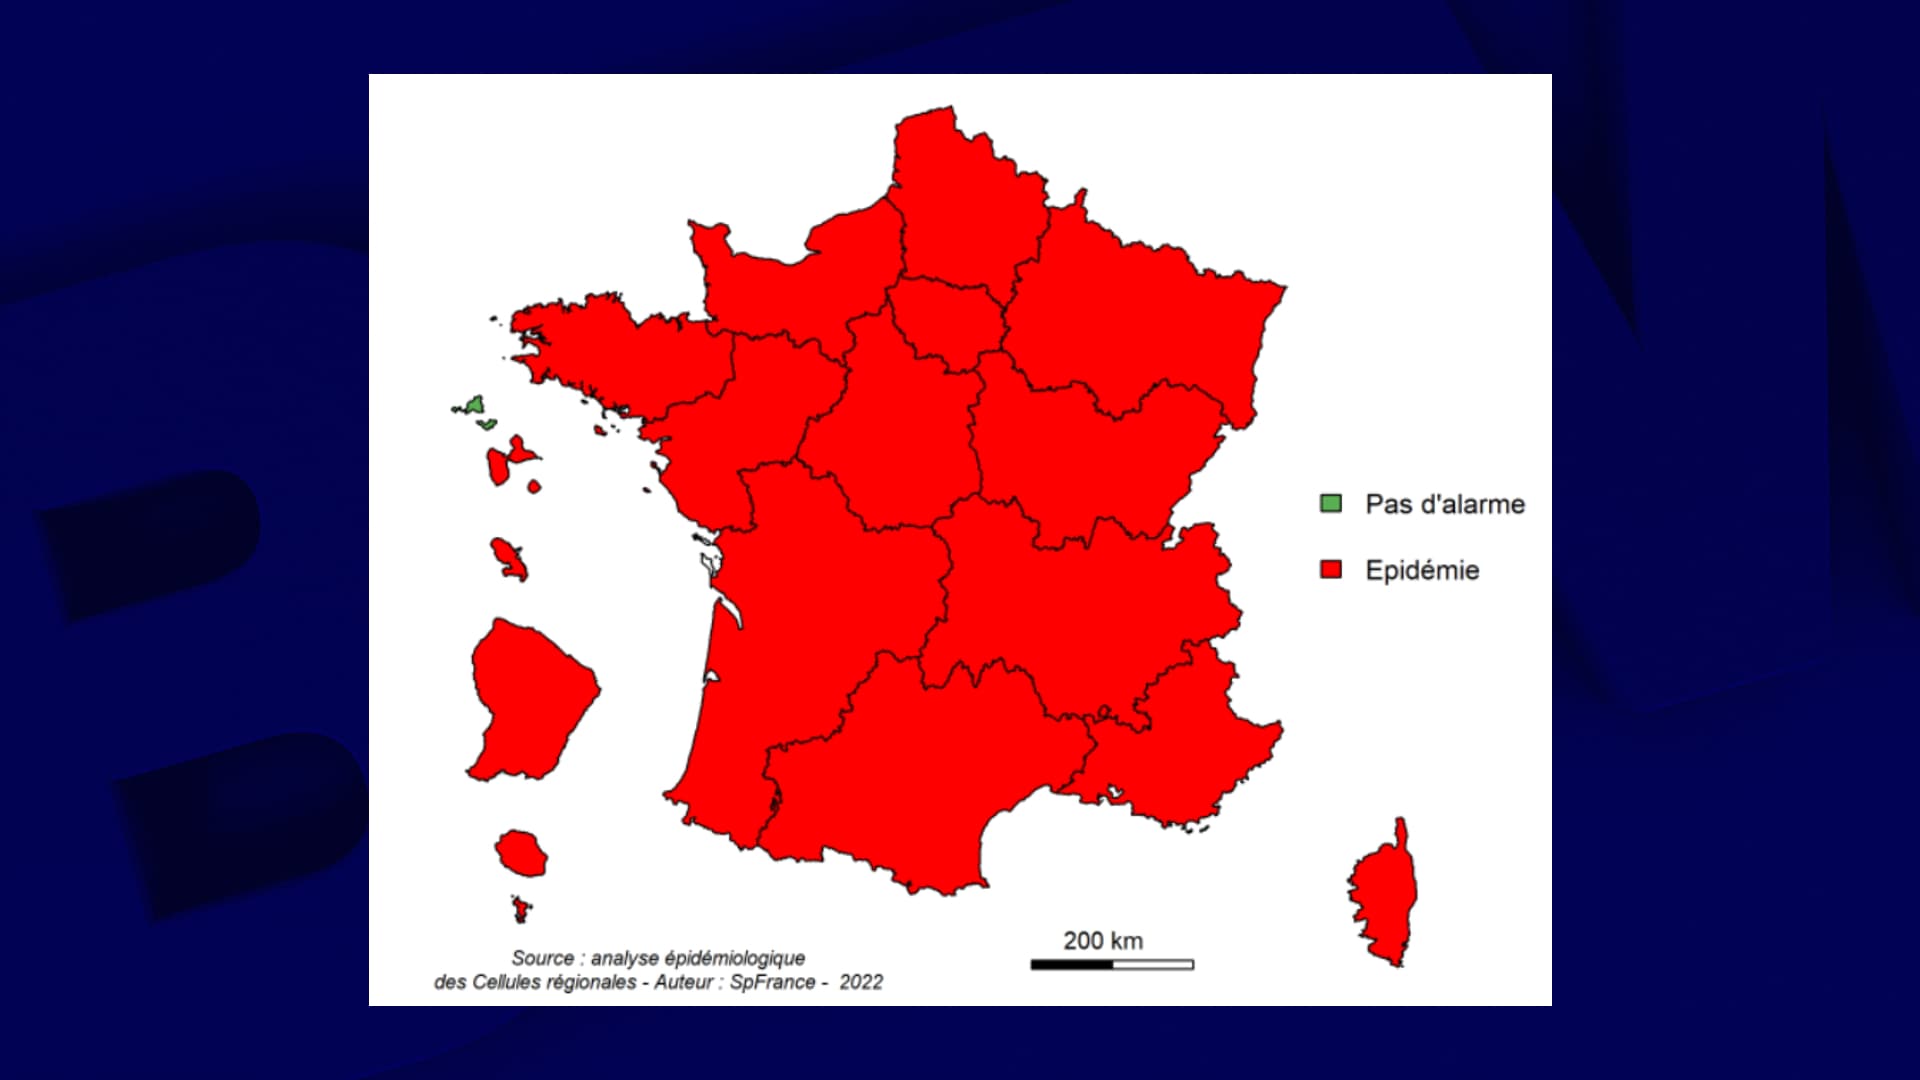 L’epidemia continua a progredire in Francia, dove i ricoveri sono fortemente aumentati